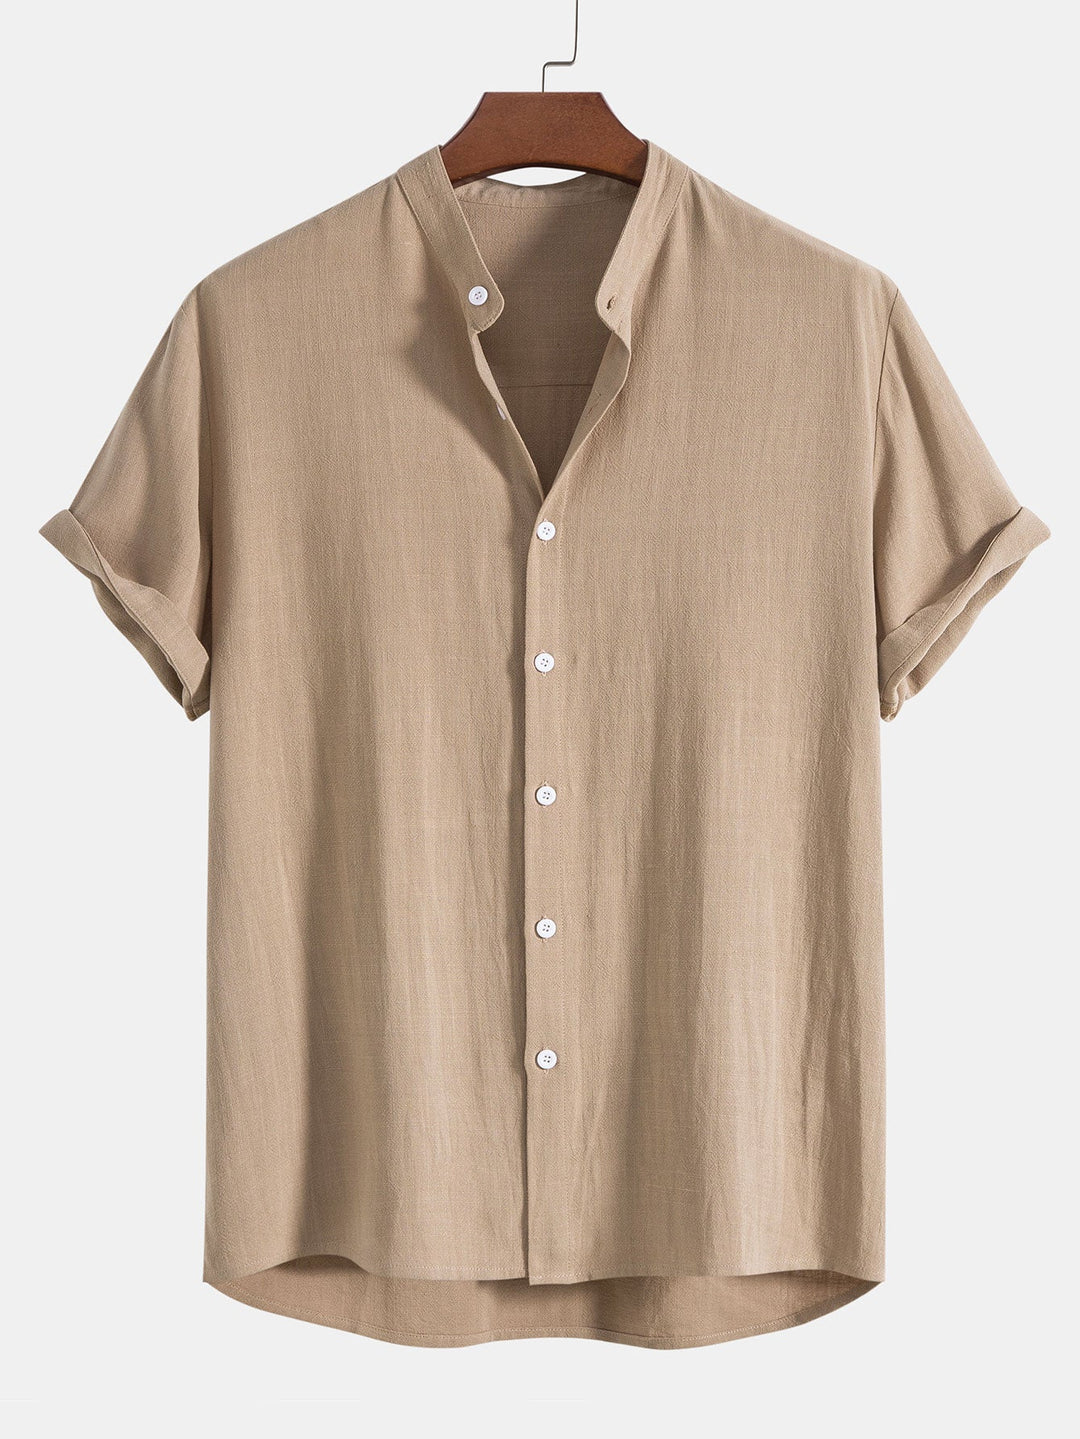 ZAID - Linnen shirt en broek